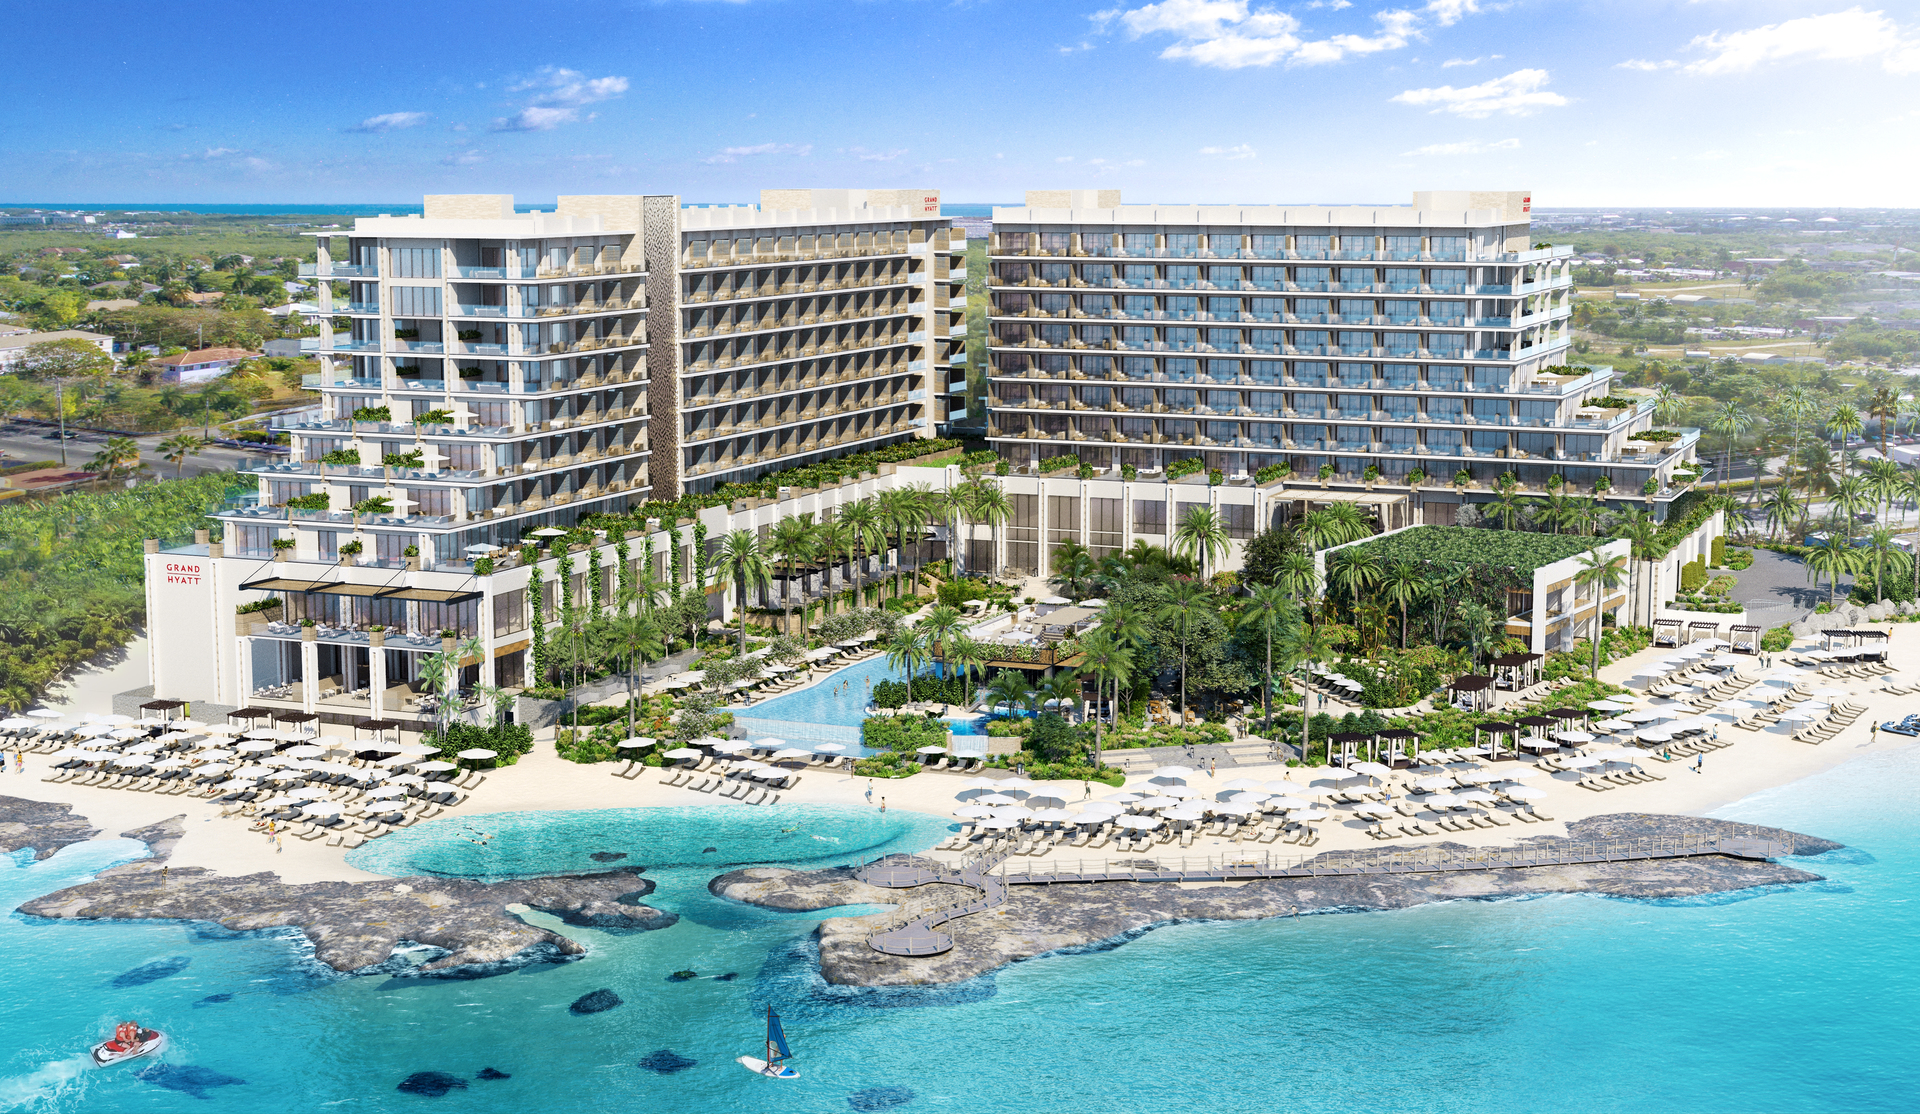 Grand Hyatt Grand Cayman Residences